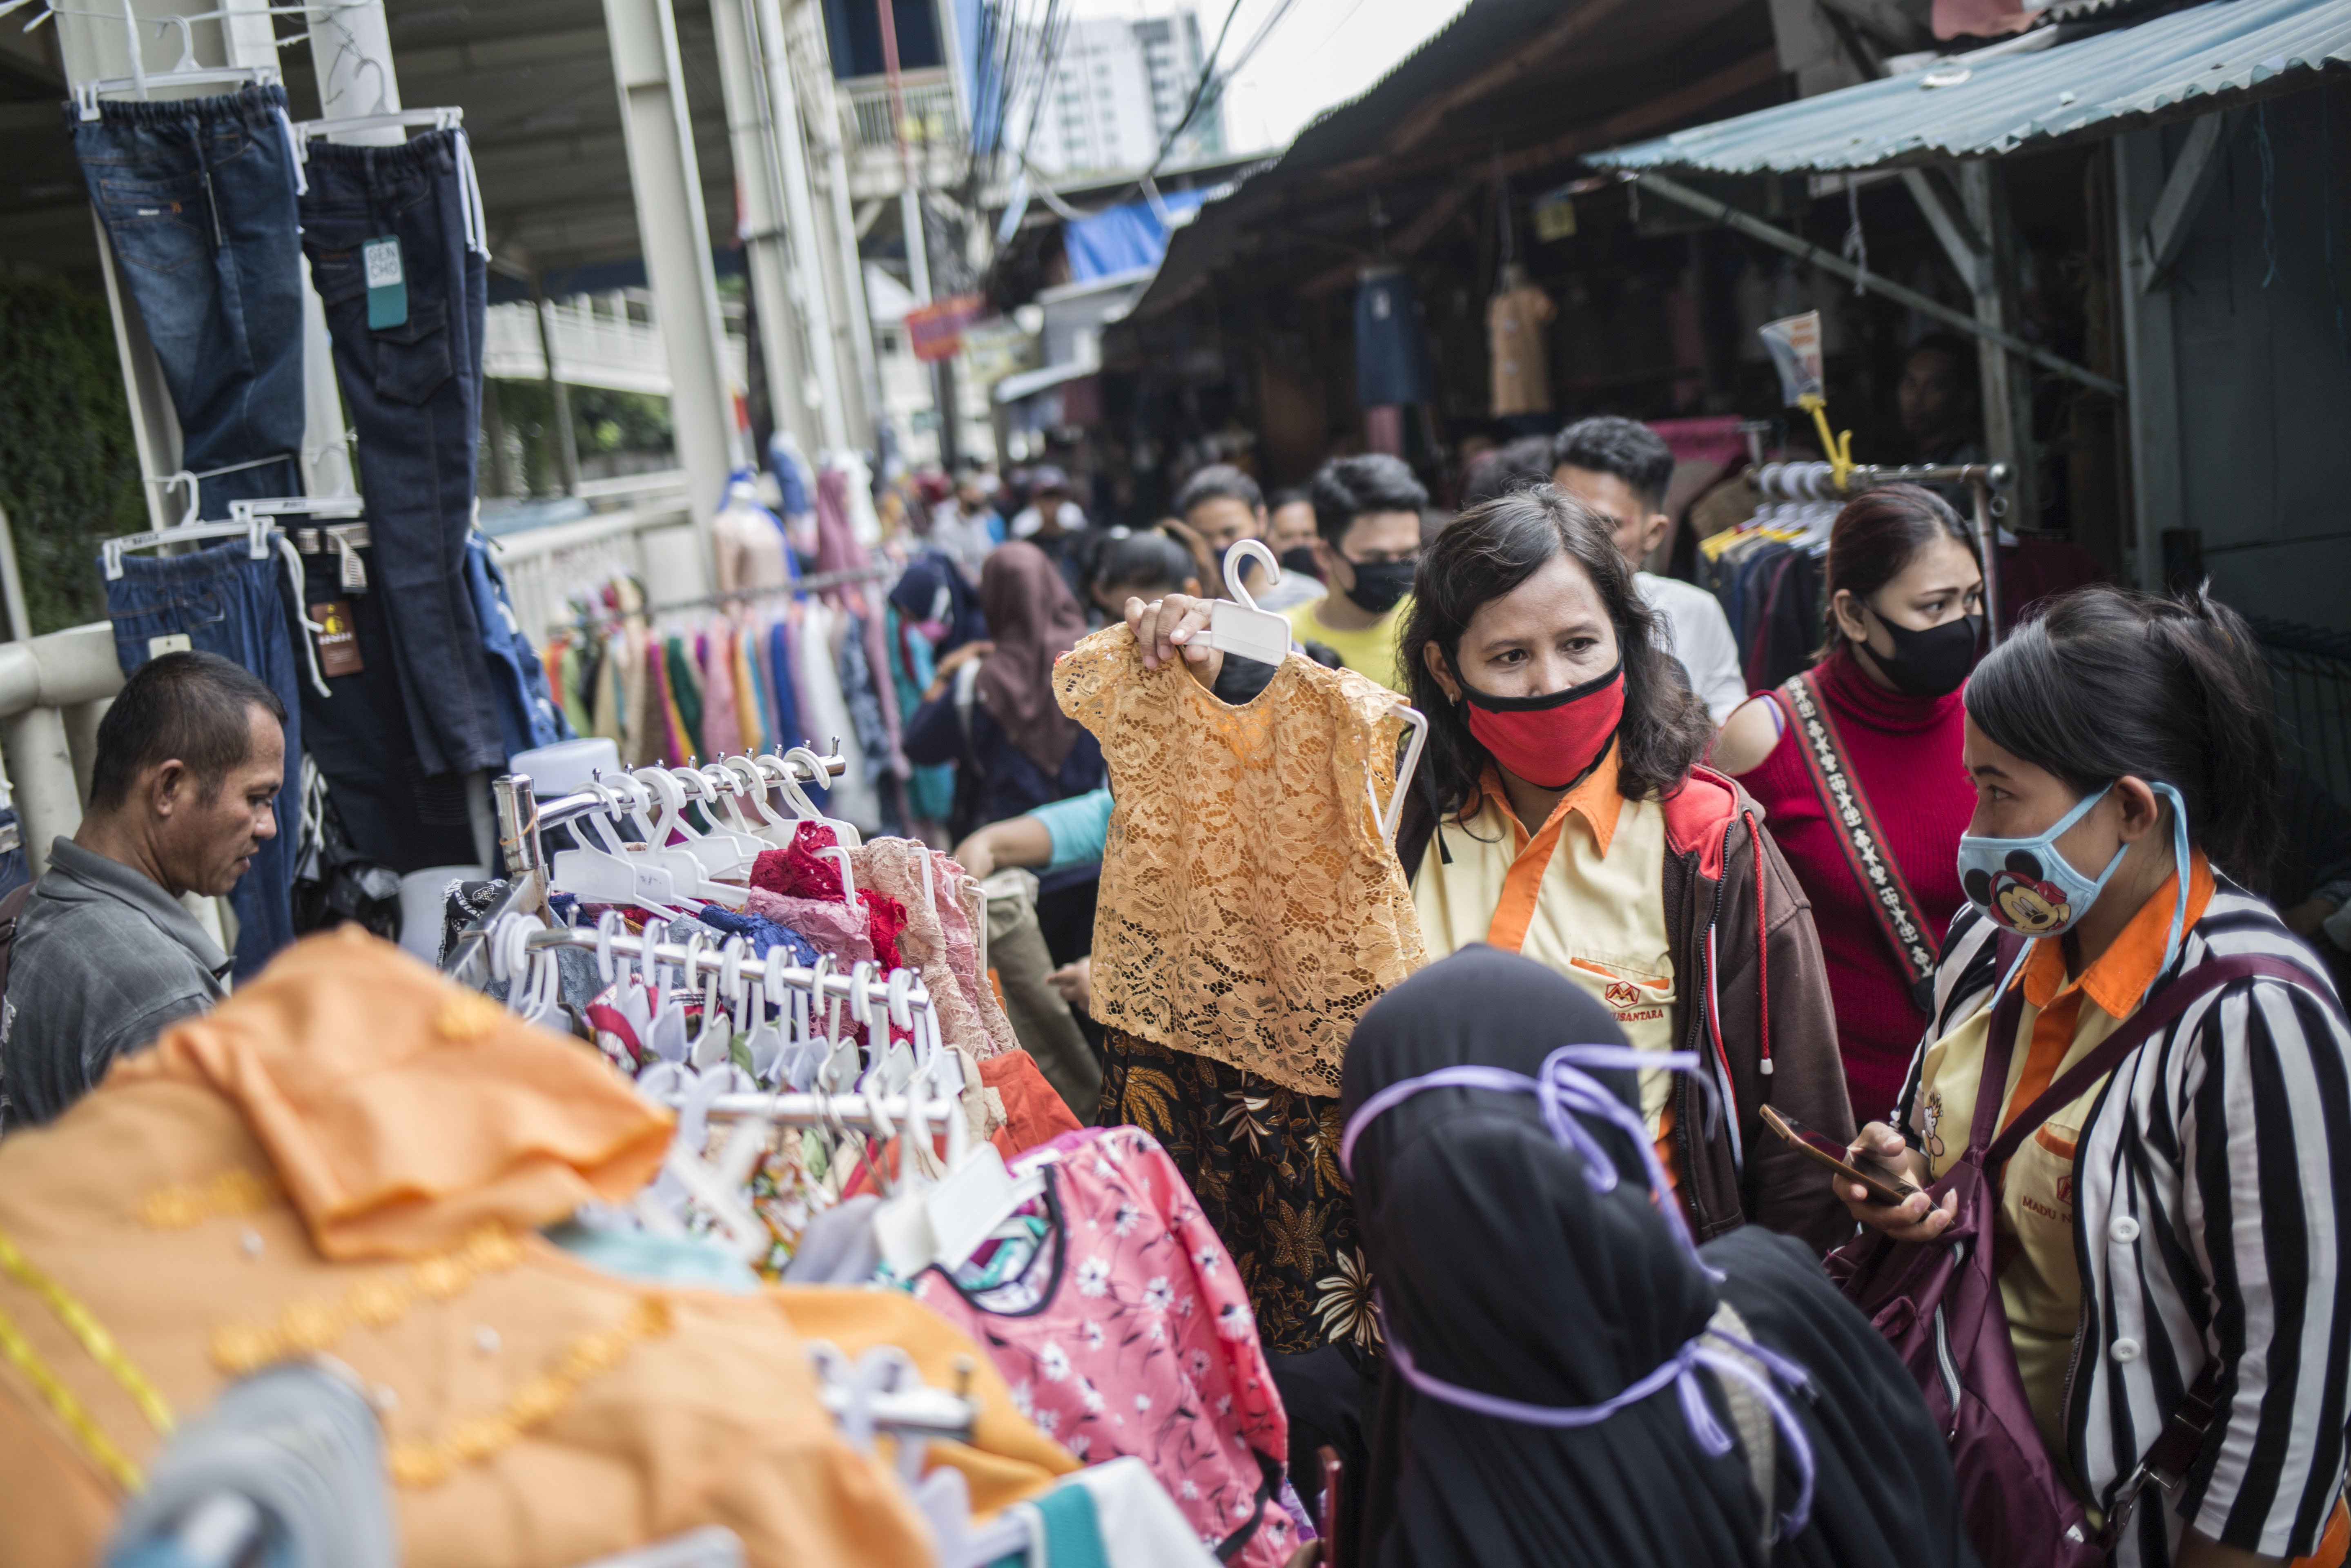 Warga berbelanja pakaian yang dijual pedagang kaki lima di atas trotoar Jalan Jati Baru Raya, Tanah Abang, Jakarta, Senin (18/5/2020). Meski kawasan niaga Pasar Tanah Abang telah tutup selama masa Pembatasan Sosial Berskala Besar (PSBB), namun sebagian pedagang tetap menggelar lapaknya di sejumlah titik seperti di atas trotoar dan di gang perkampungan setempat.